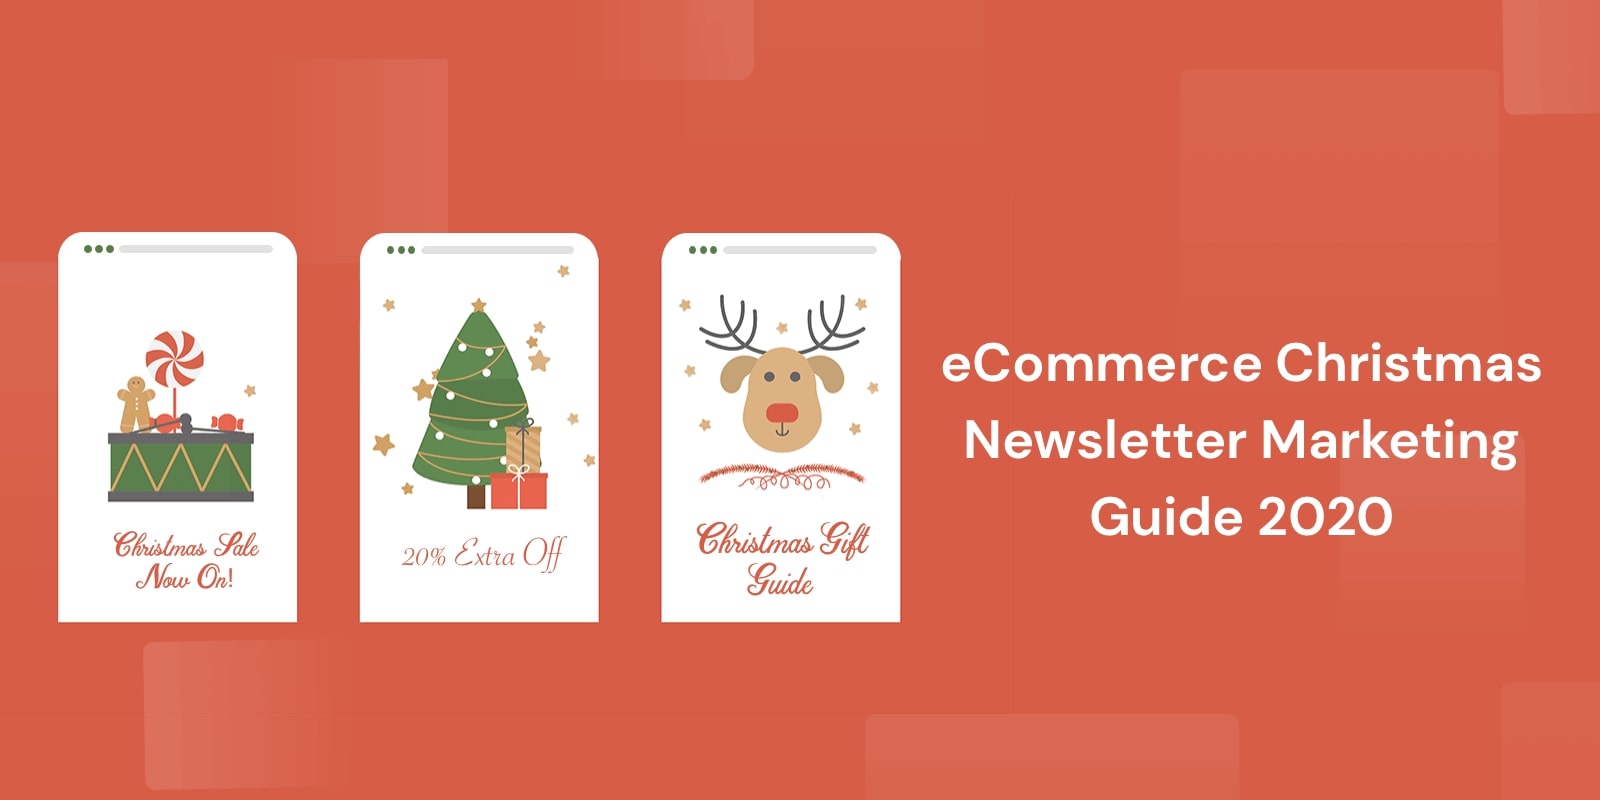 eCommerce Christmas Newsletter Marketing Guide